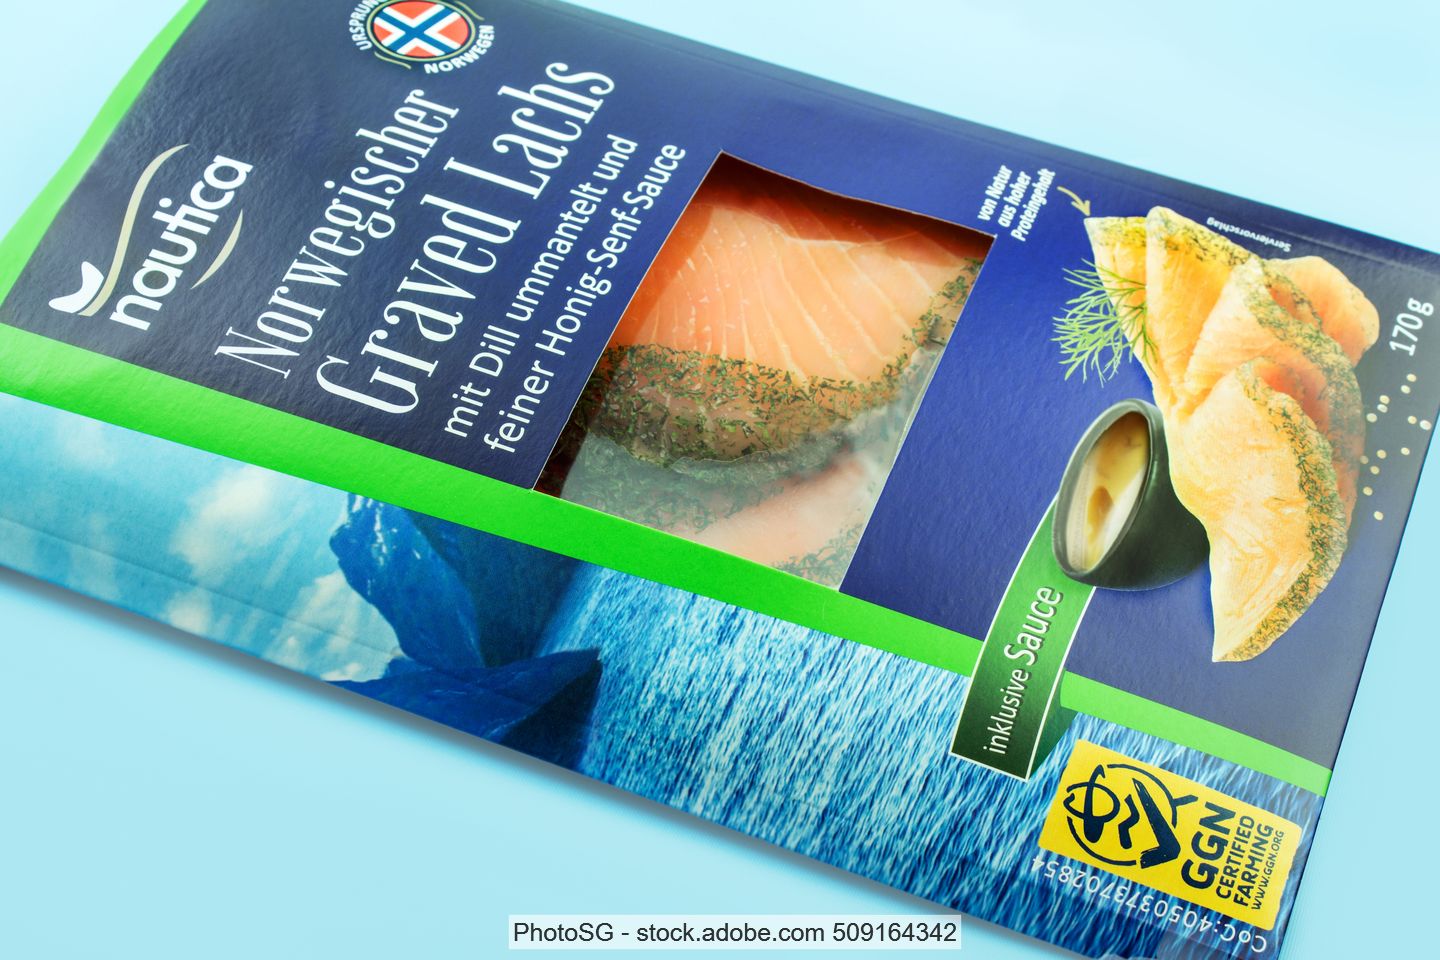 Verpackung aus Papier und Kunststoff für Lachs von Lidl-Eigenmarke Nautica